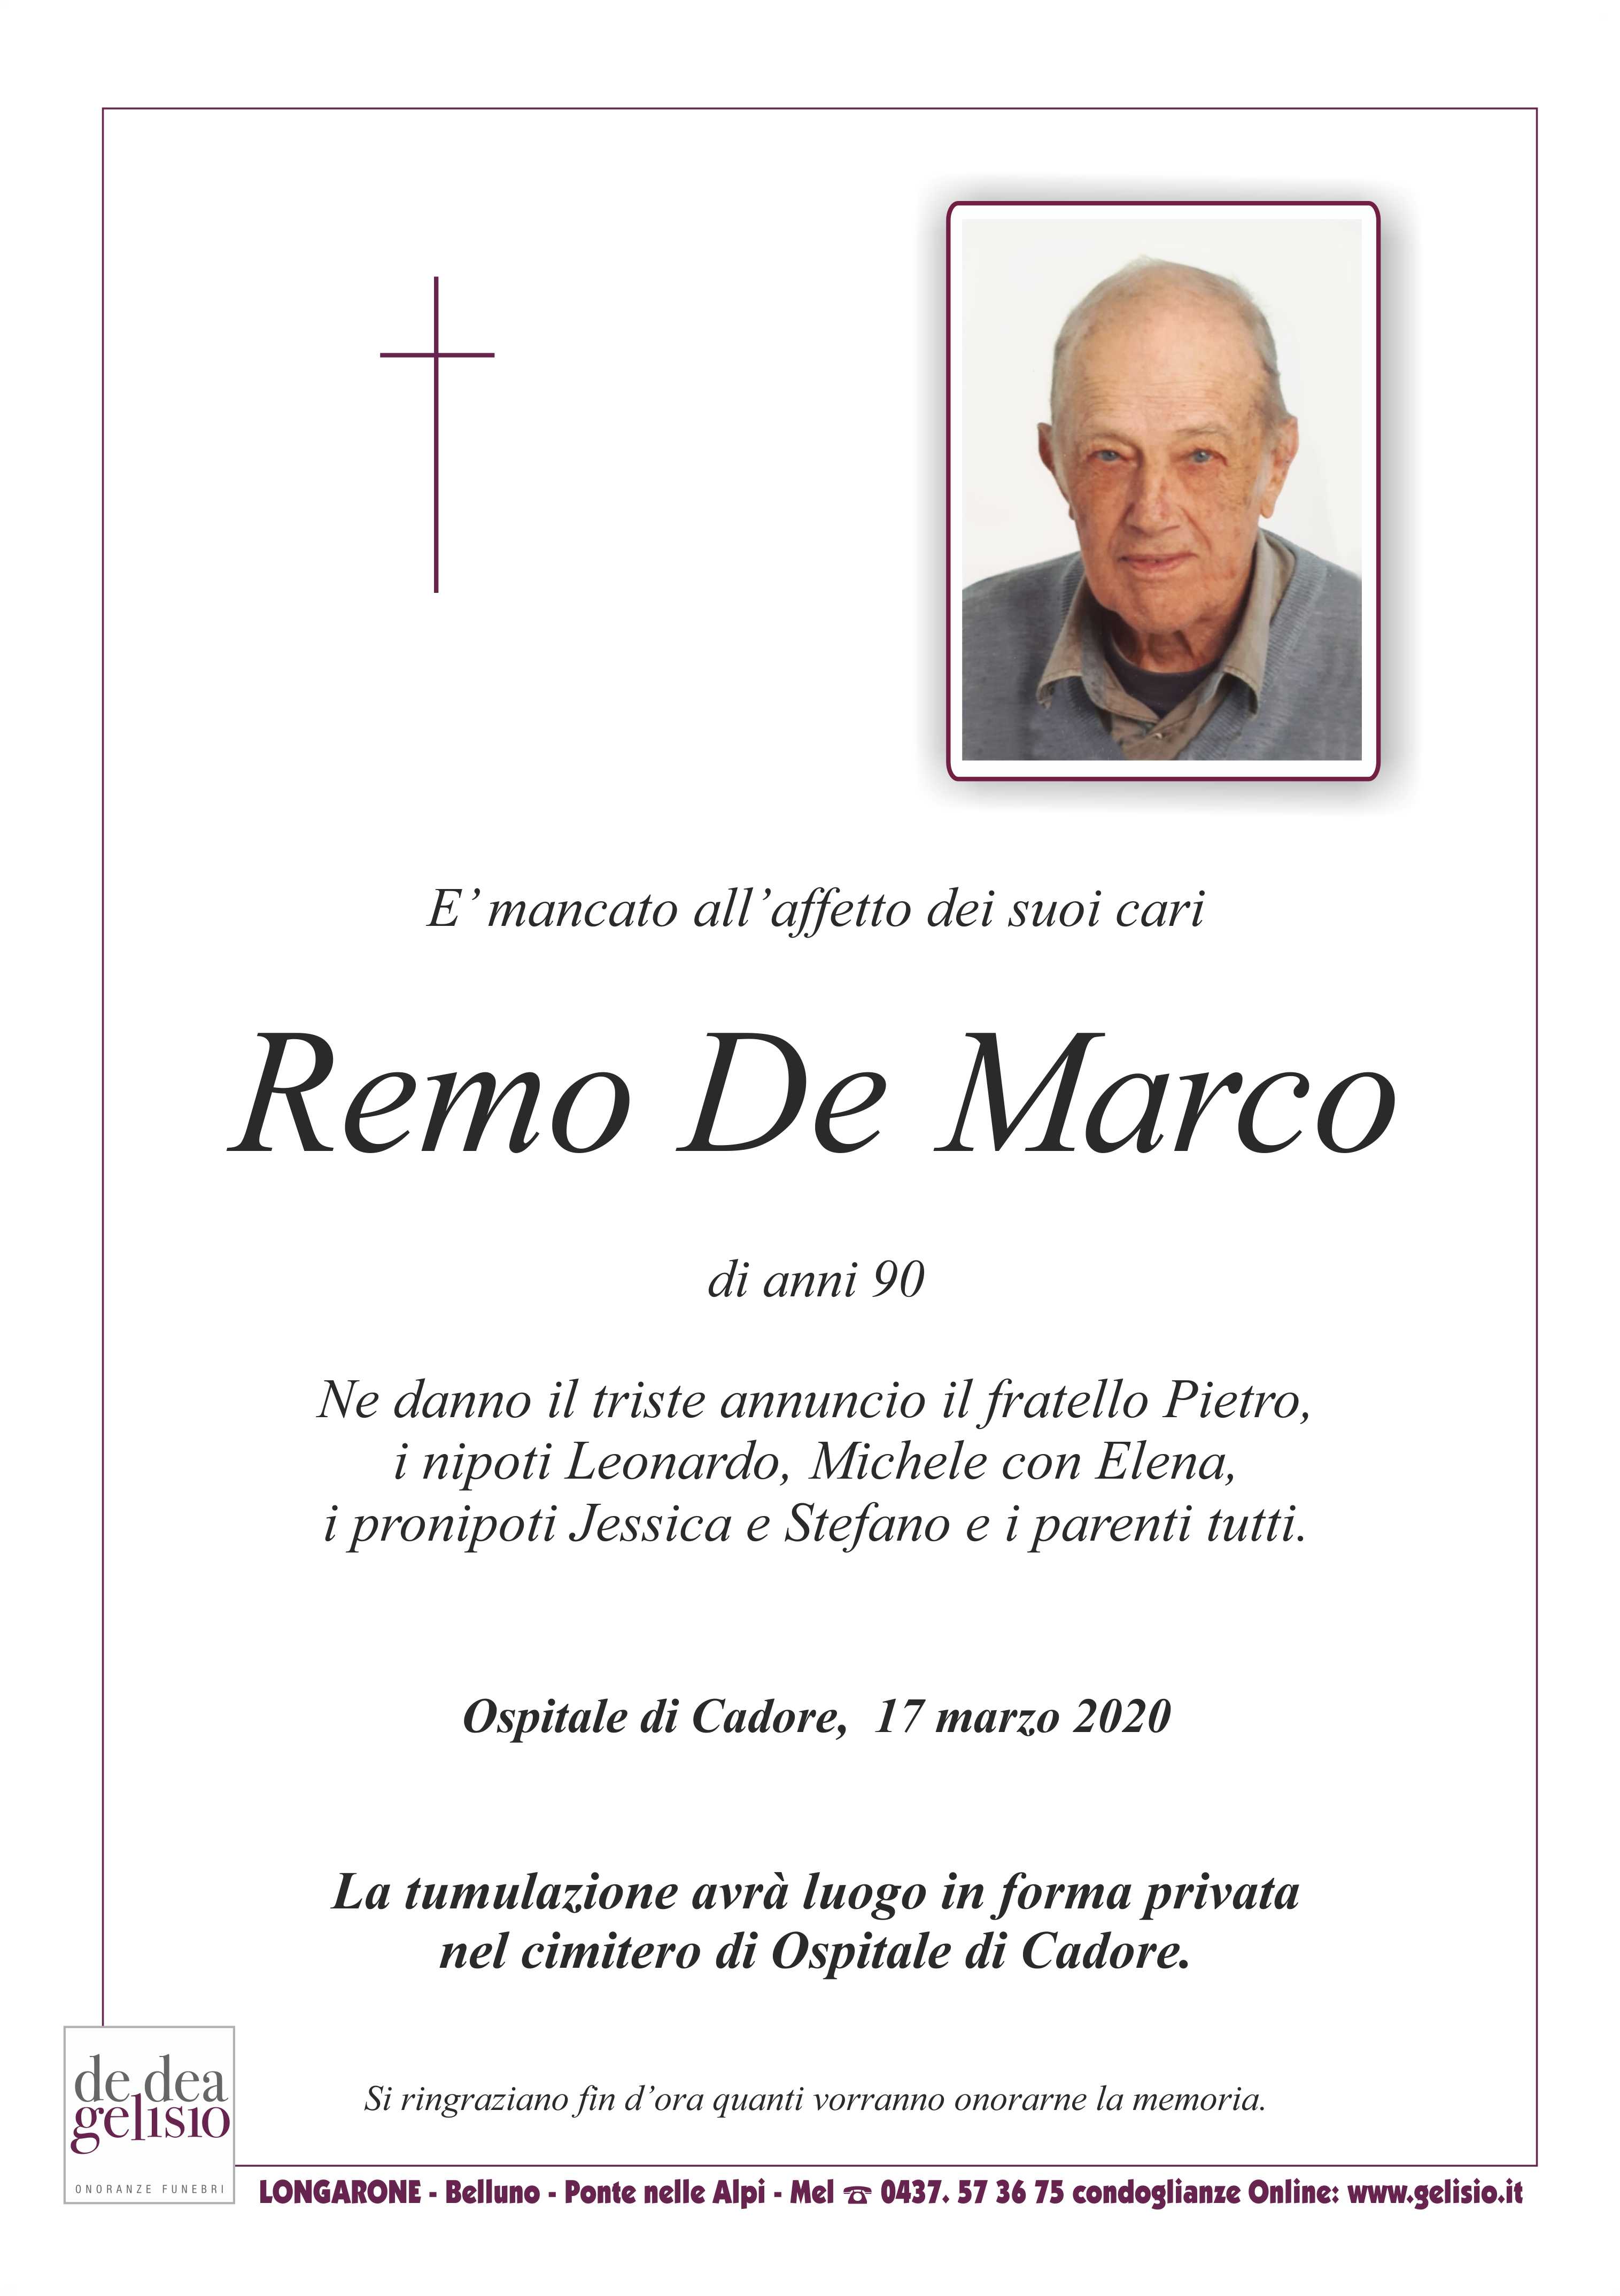 De Marco Remo